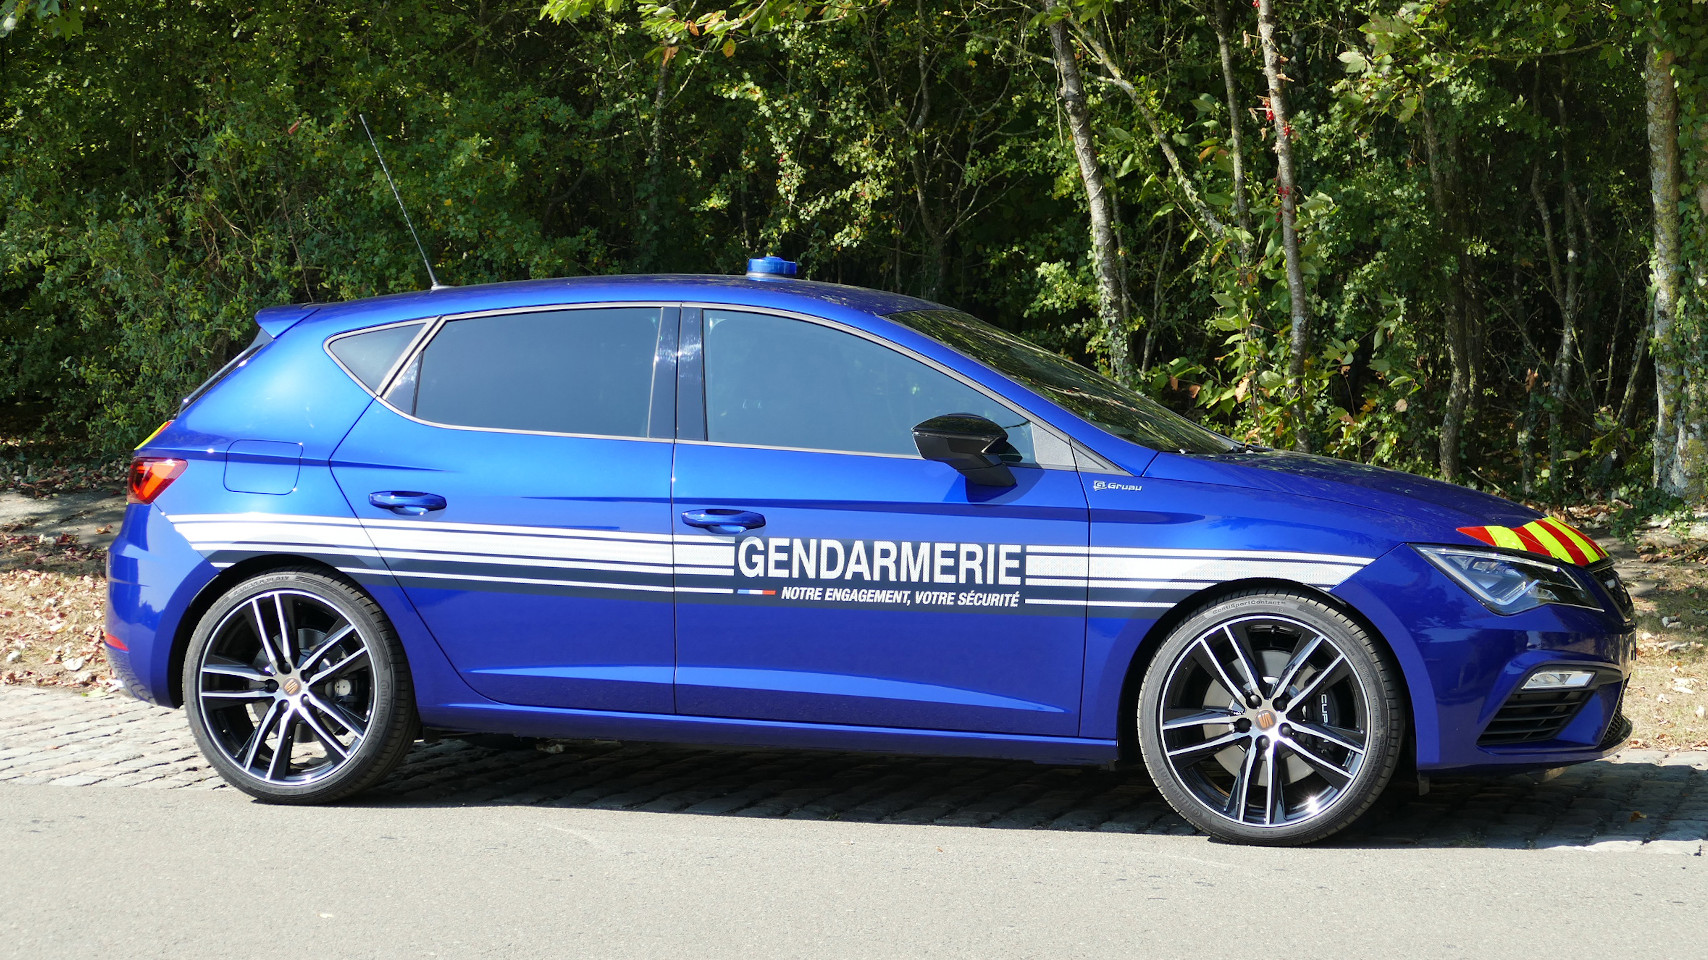 Nouveau modèle SEAT Gendarmerie nationale